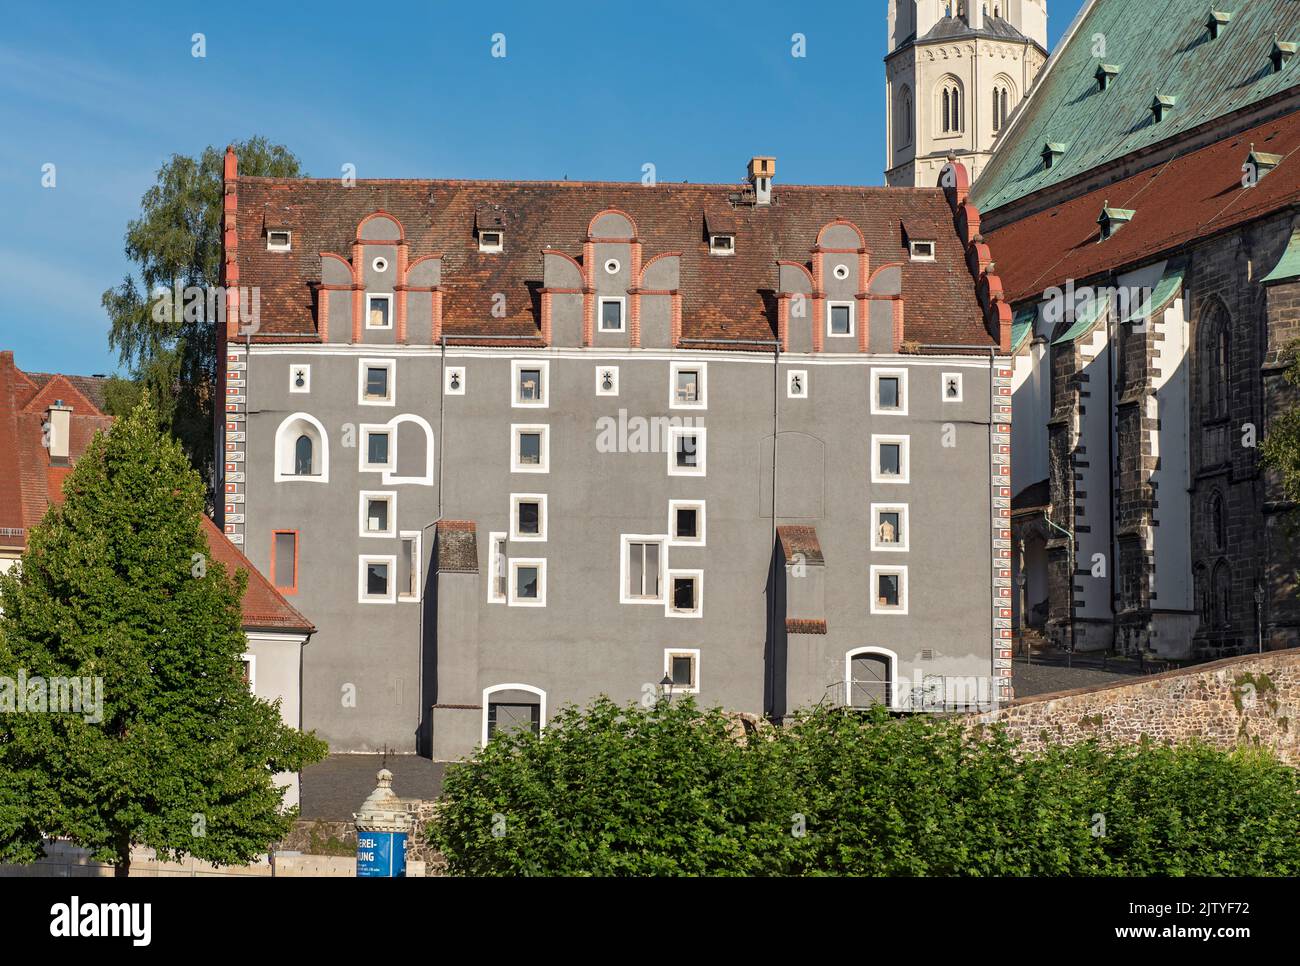 Woad House (Waidhaus), Görlitz (Goerlitz), Germany Stock Photo